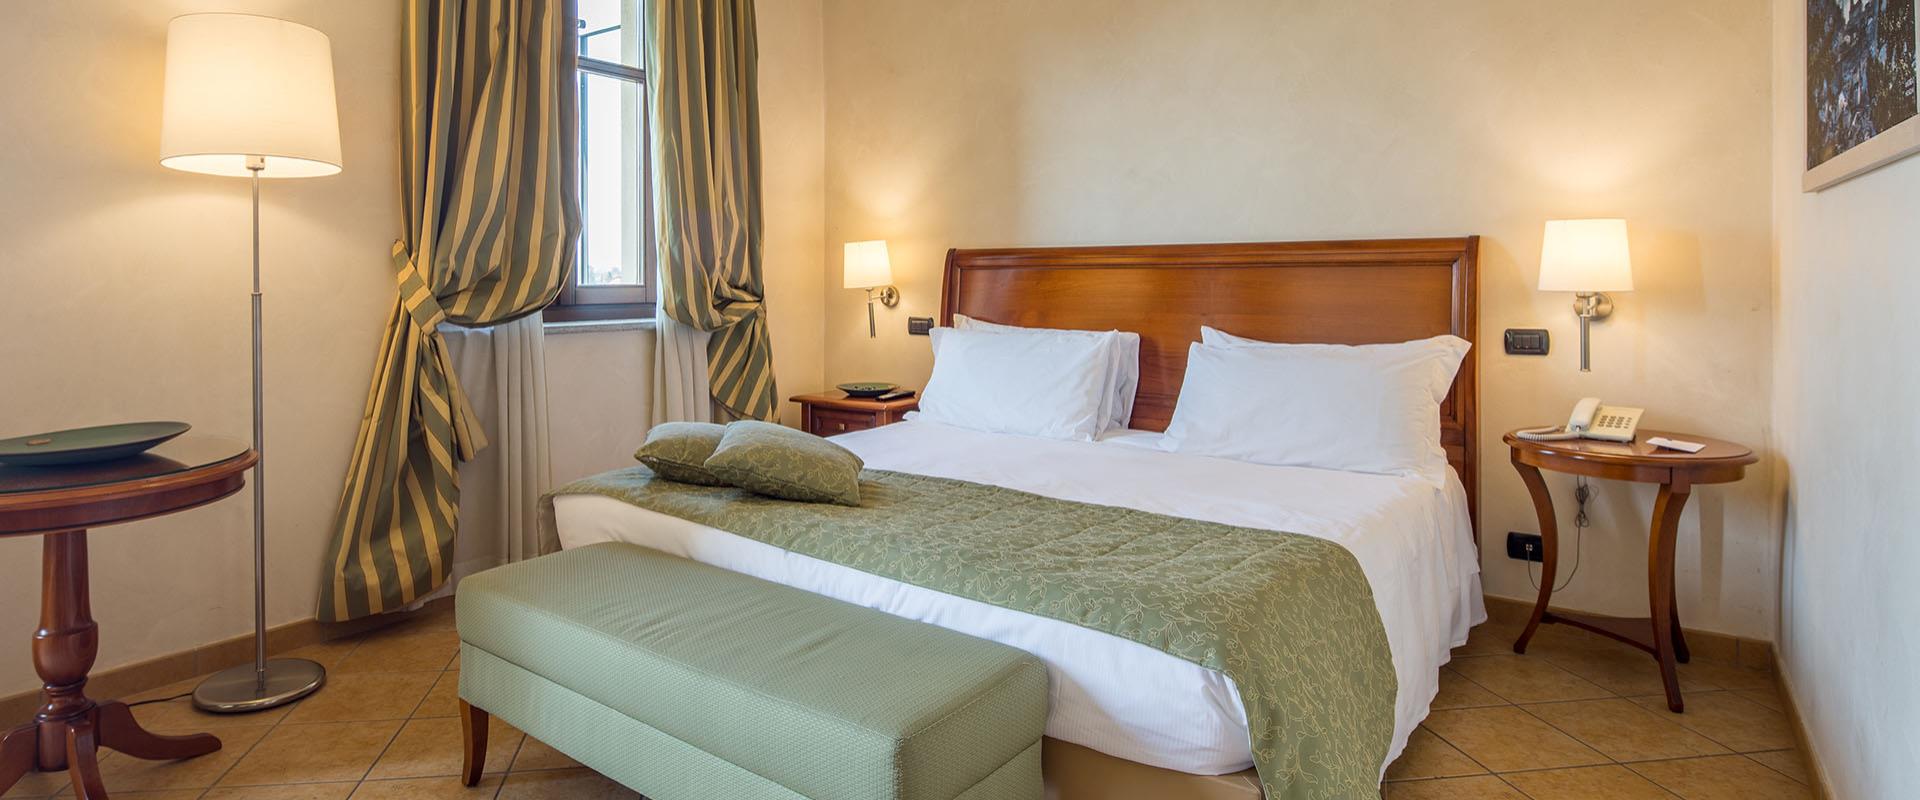 Suchen Sie ein Hotel für Ihren Aufenthalt in der Nähe des Flughafens Turin Caselle? Buchen Sie im Best Western Plus Hotel Le Rondini